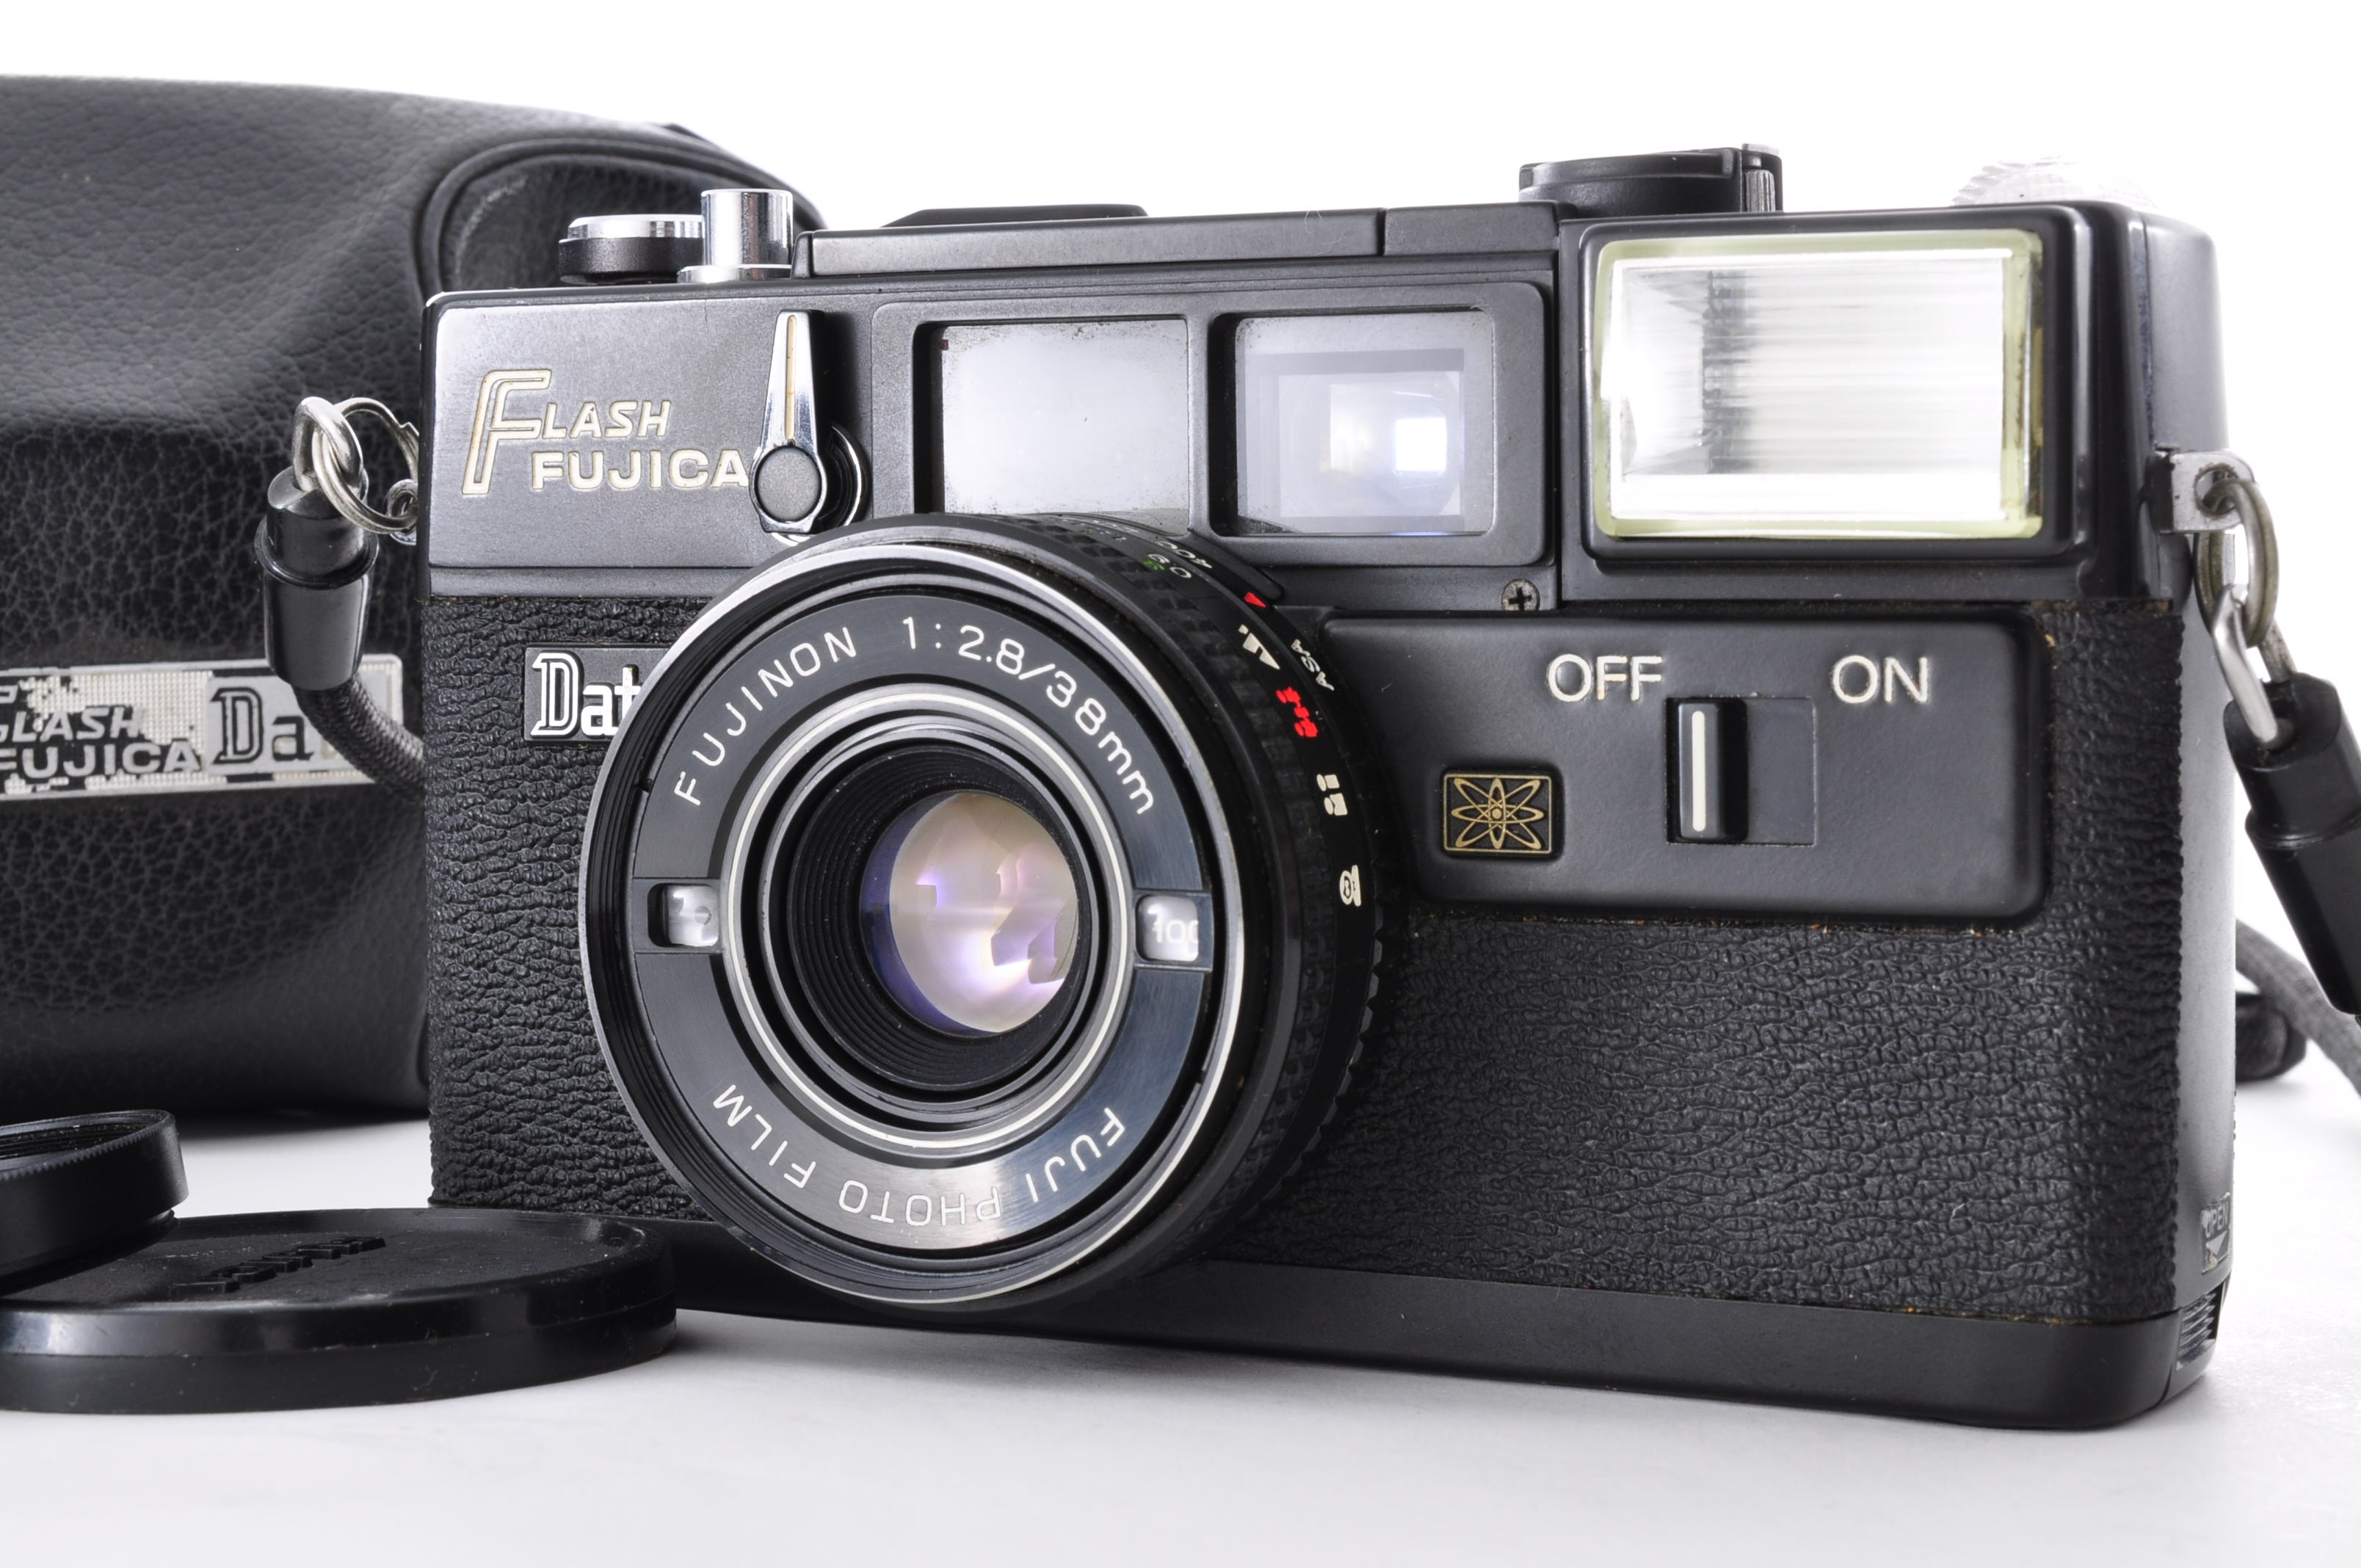 Fuji Fujifilm Flash Fujica Date Rangefinder 35mm Film Camera [Near MINT] JAPAN img01